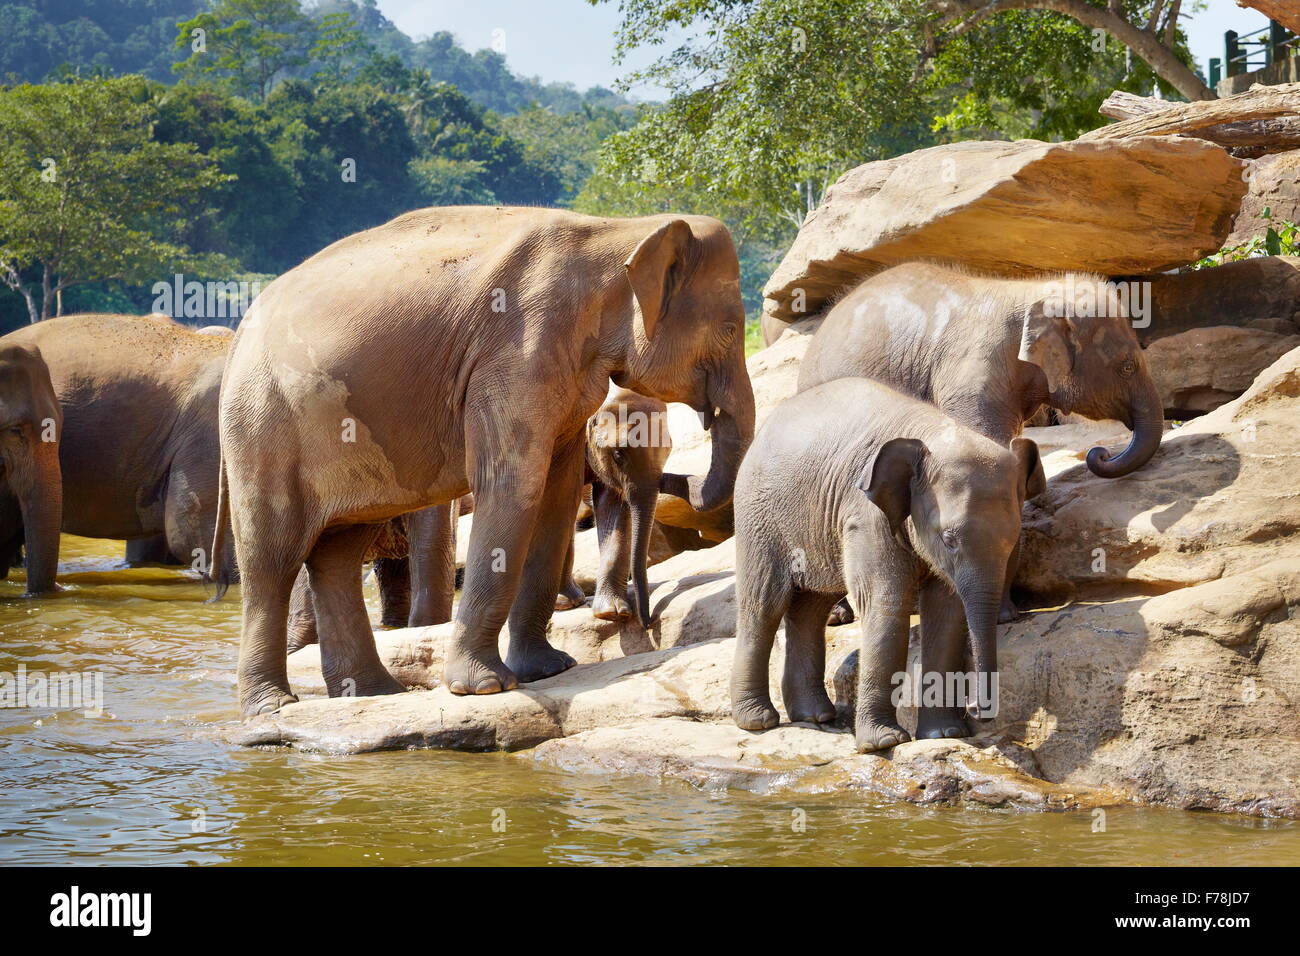 Sri Lanka - Elefanten in der Badewanne, Pinnawela Elefantenwaisenhaus für wilde asiatische Elefanten Stockfoto